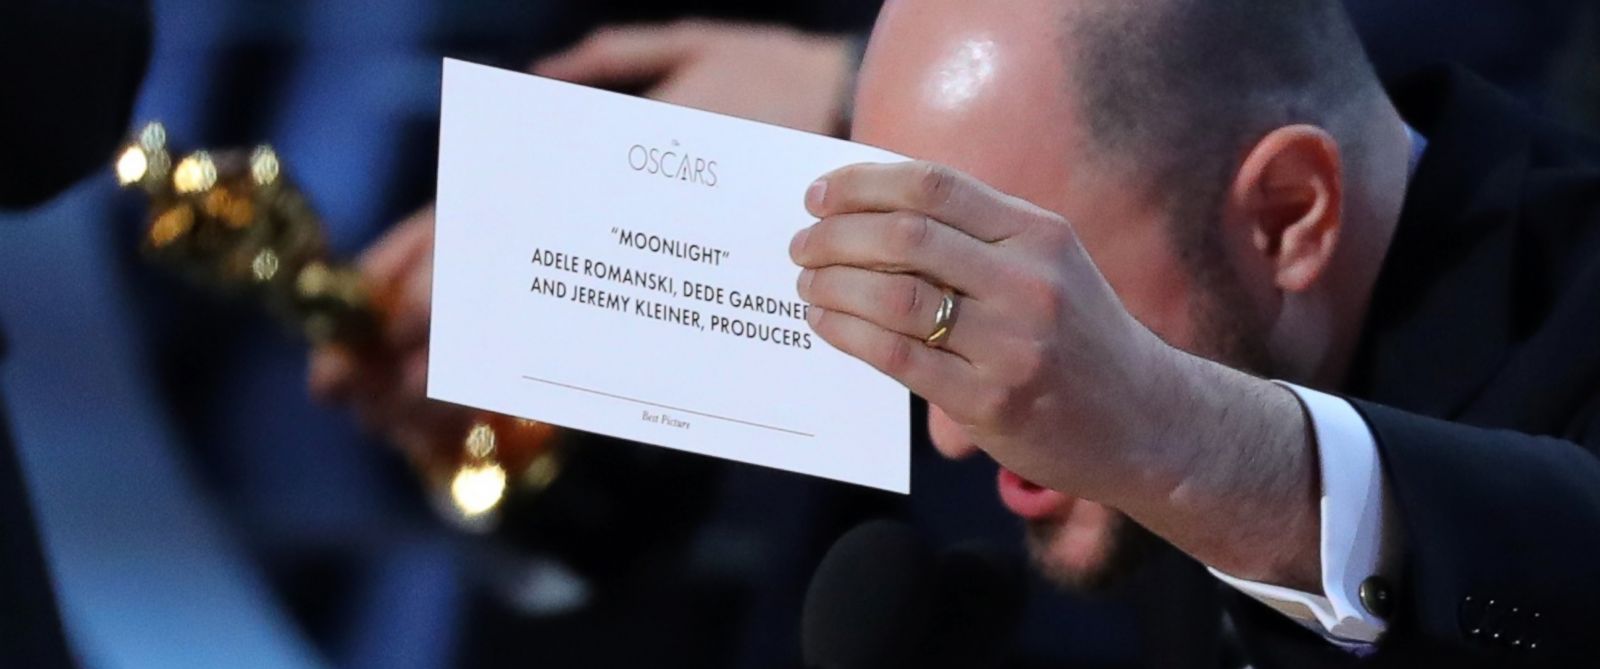 [WATCH] Oscars Mix-Up, Moonlight Beats La-La Land for Best Picture